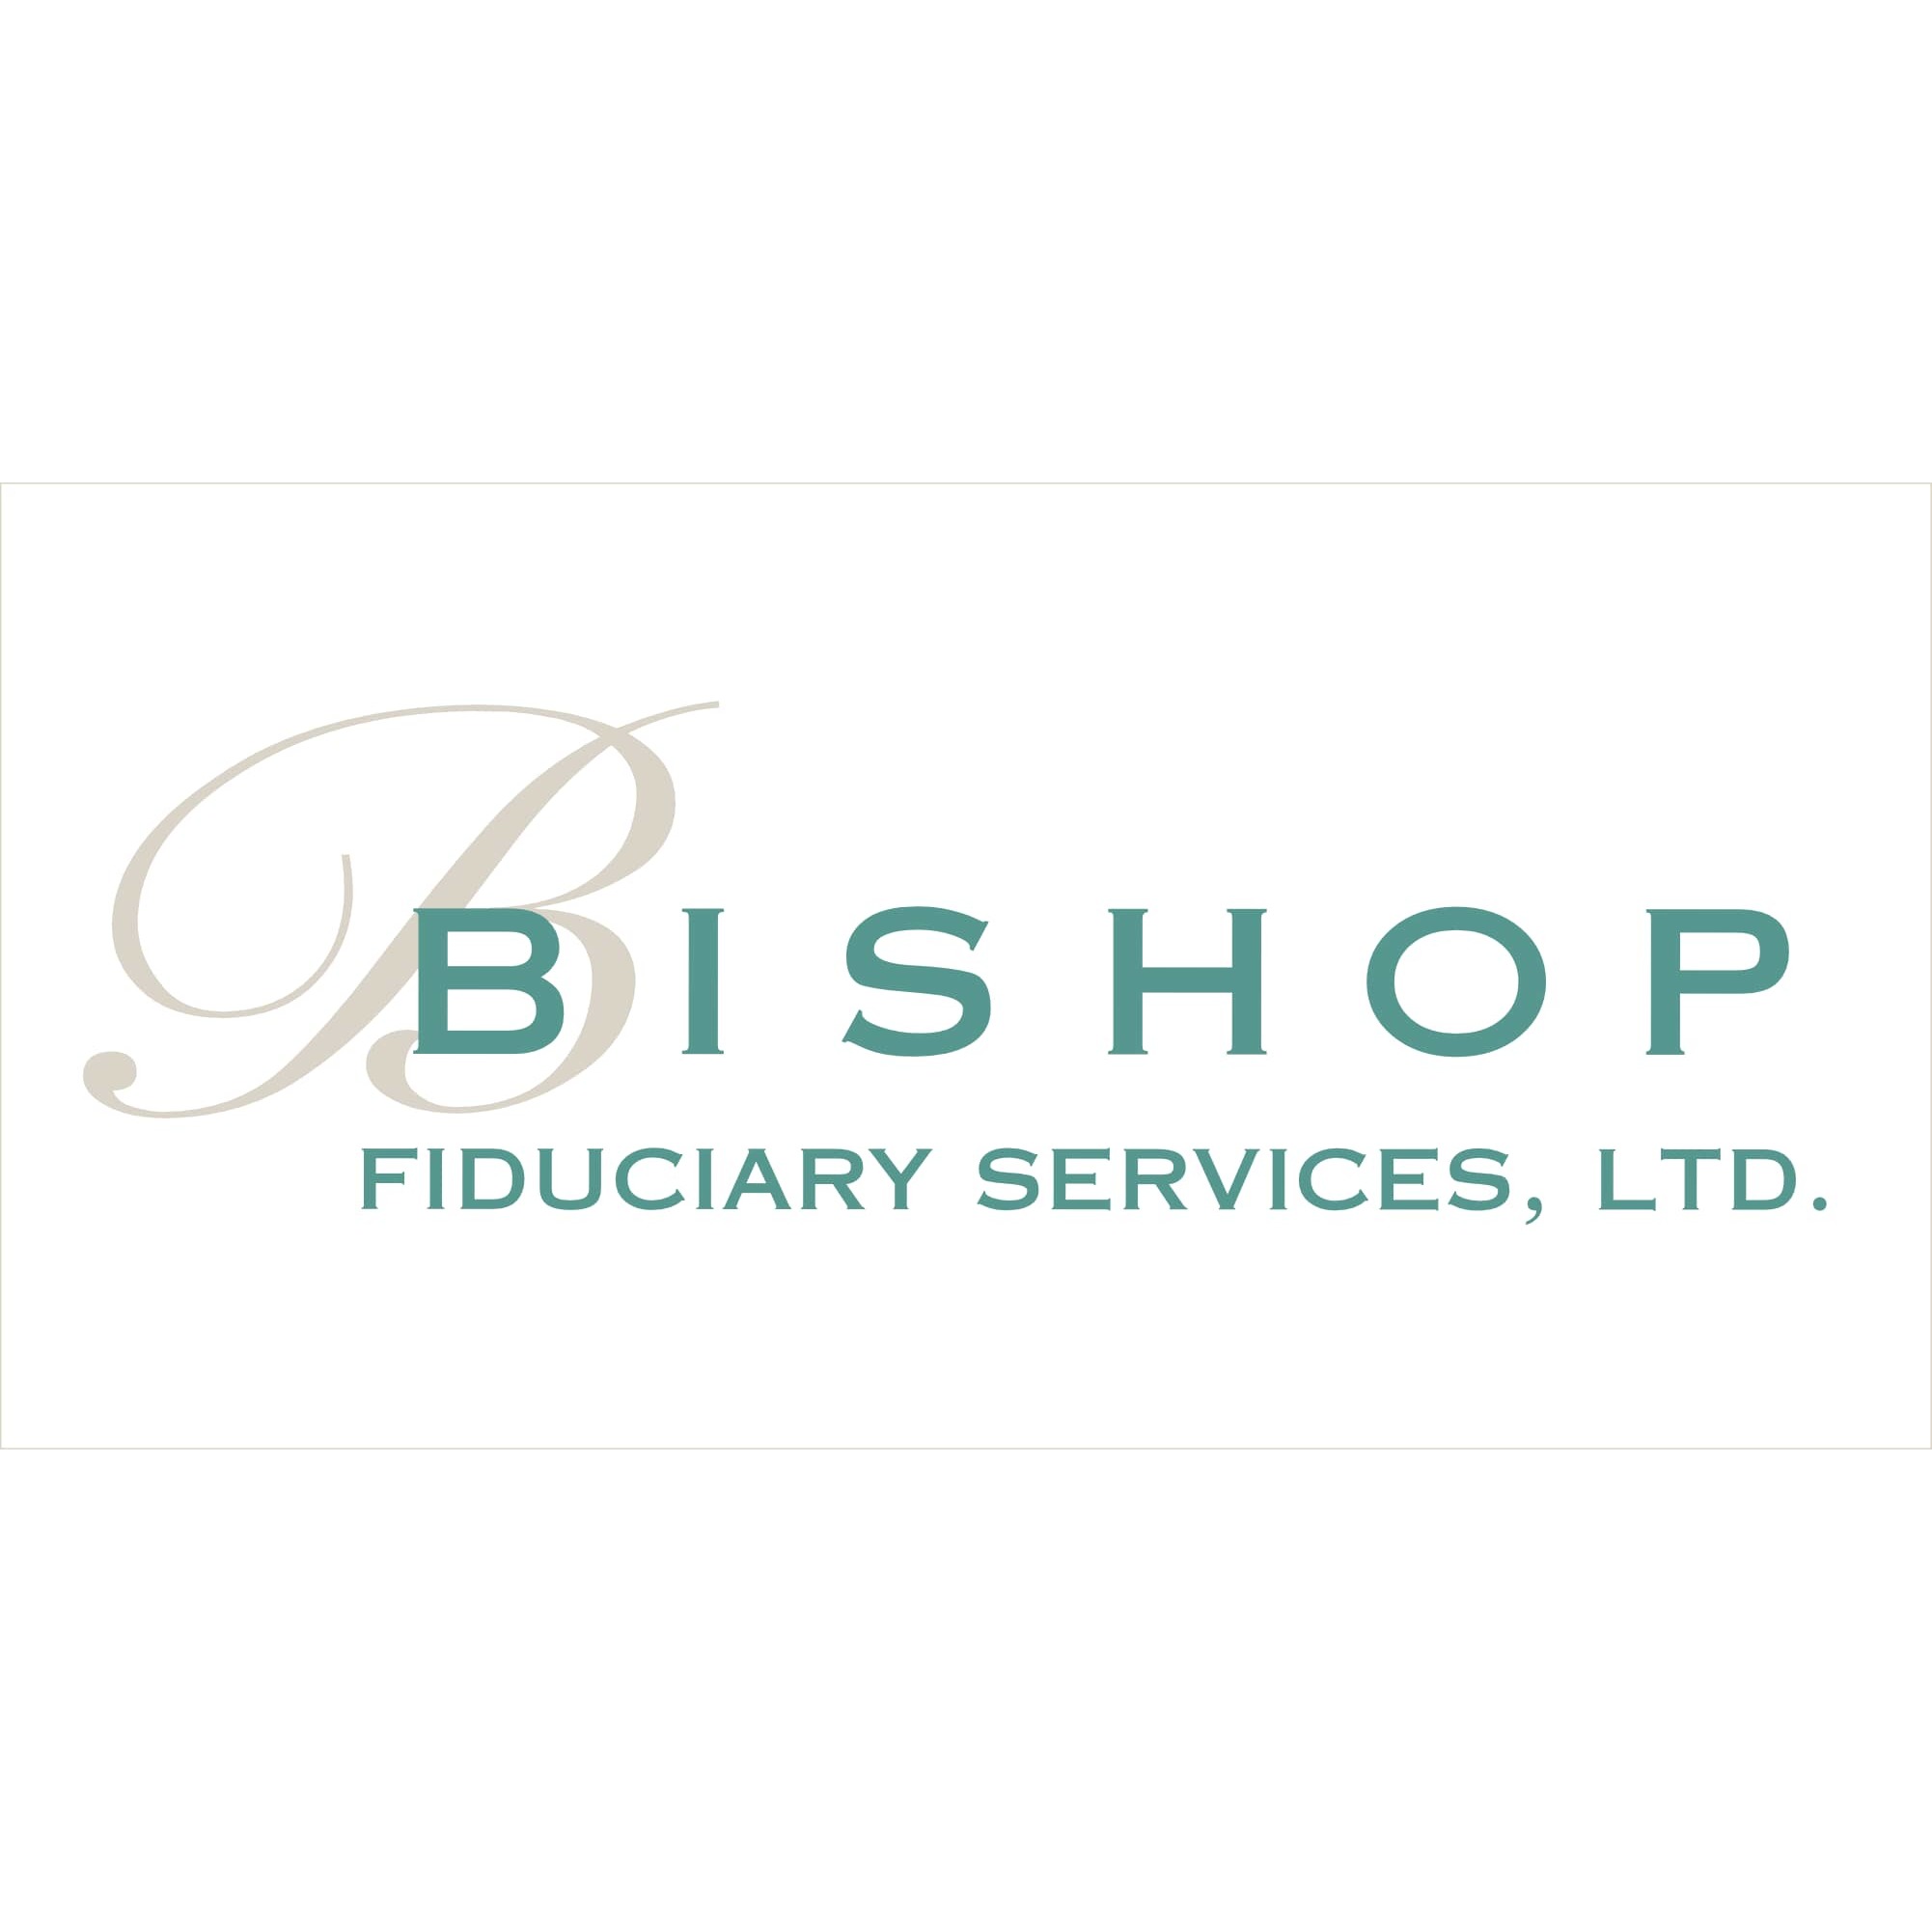 Bishop Fiduciary Services Ltd. - Walnut Creek, CA 94597 - (925)472-6518 | ShowMeLocal.com